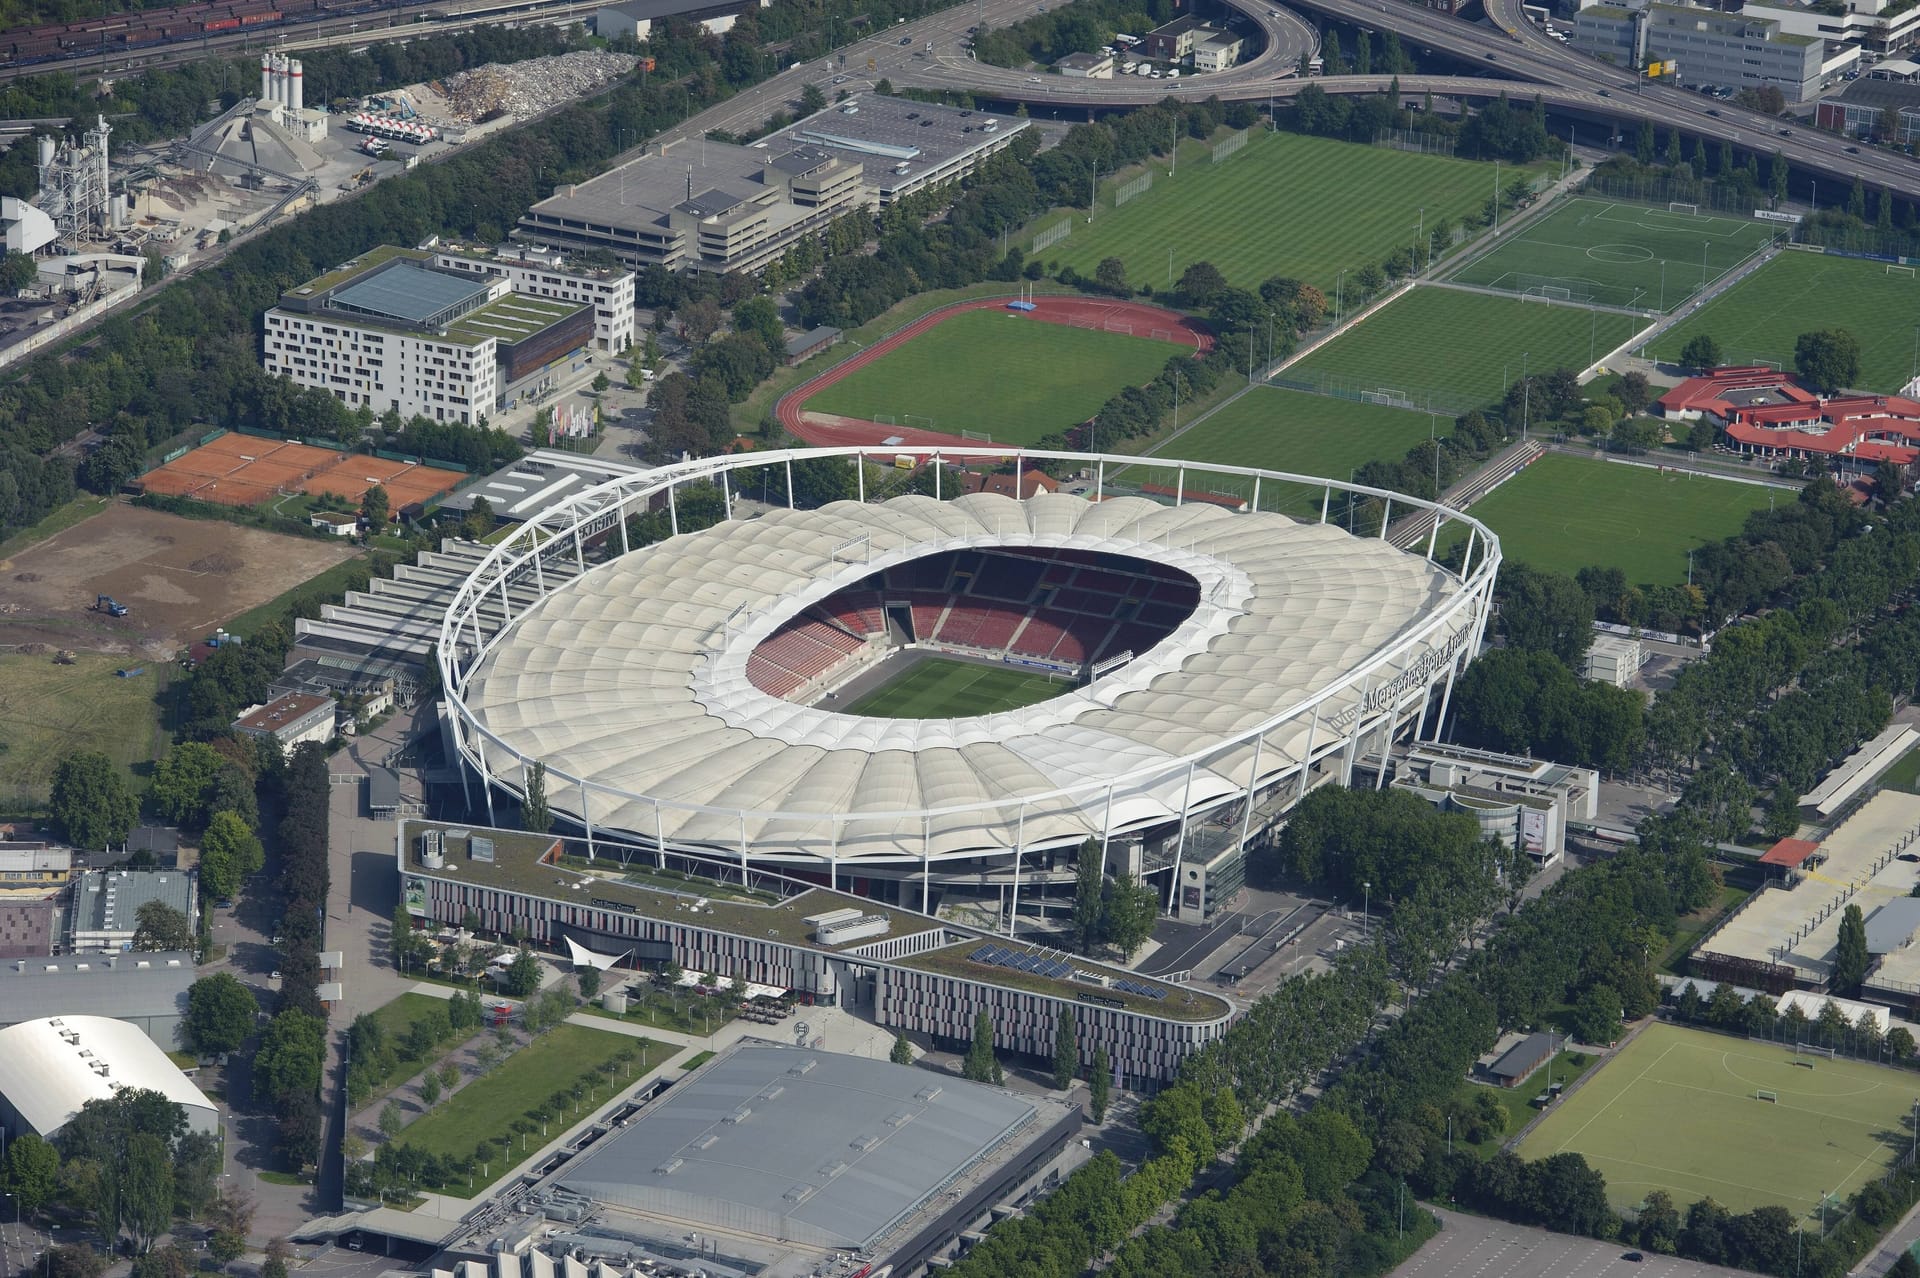 MHPArena in Stuttgart: Auch die Heimspielstätte des VfB Stuttgart spielte bei der WM 2006 eine Hauptrolle. So krönte das DFB-Team sein Sommermärchen mit dem Gewinn der Bronzemedaille in Stuttgart. In diesem Jahr wird das DFB-Team schon in der Gruppenphase in Stuttgart zu Gast sein und dort auf Ungarn treffen. Hinzu kommen drei weitere Gruppenspiele und ein Viertelfinale. Insgesamt 51.000 Zuschauer werden die Spiele von den Rängen verfolgen können.